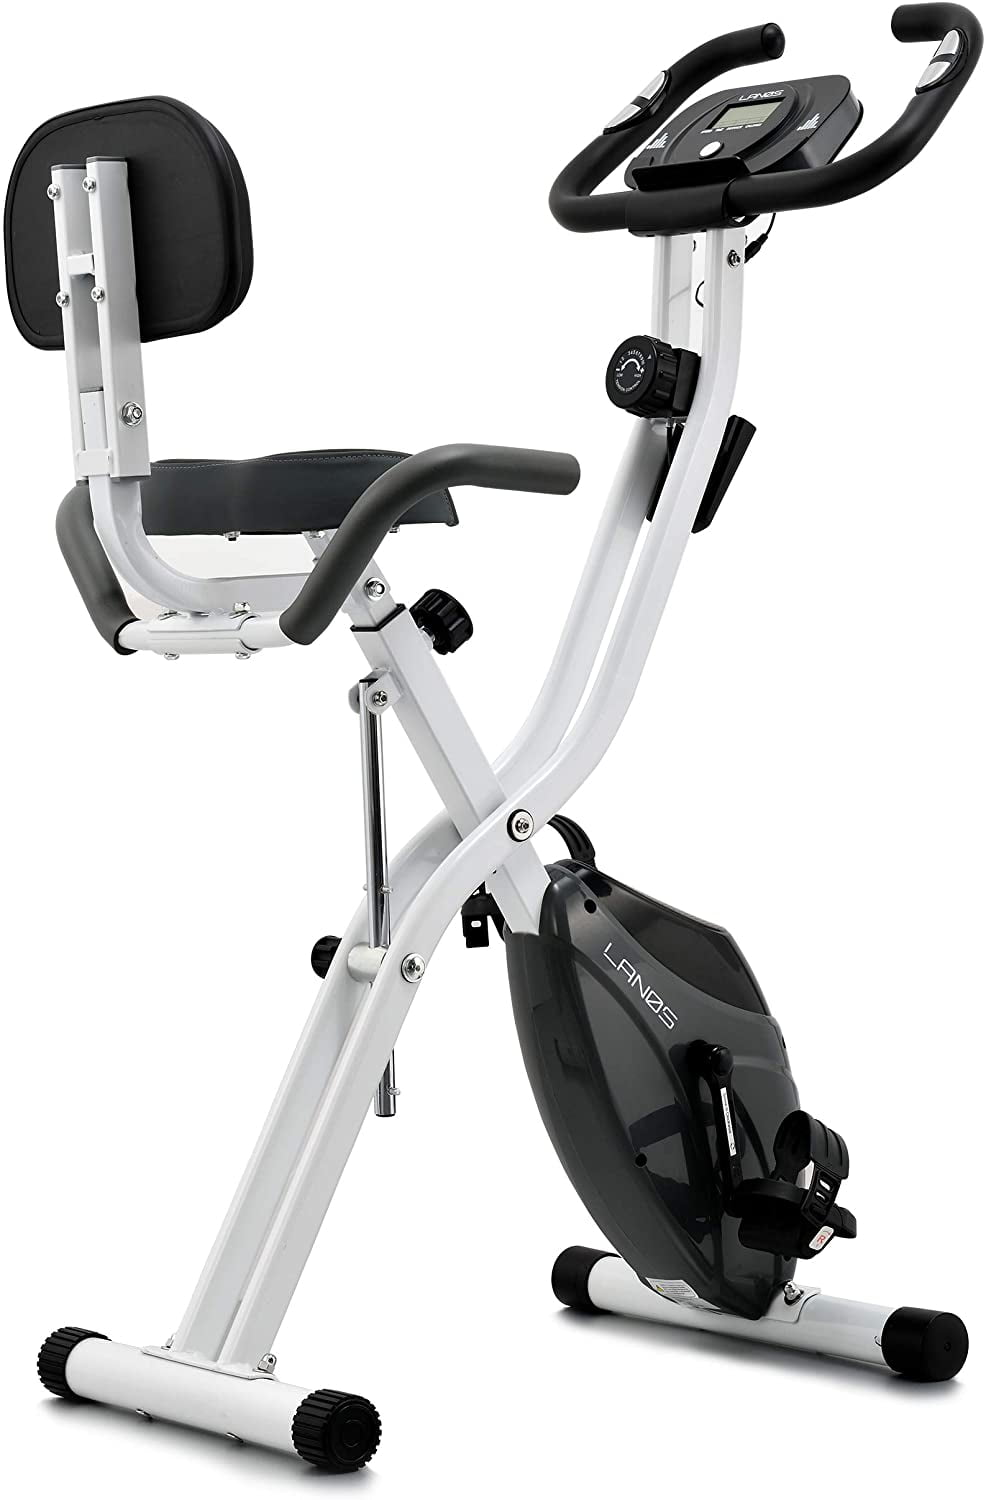 Details about   Folding Indoor Exercise Bike 10 Level Adjustable Magnetic Resistancefor for Home 